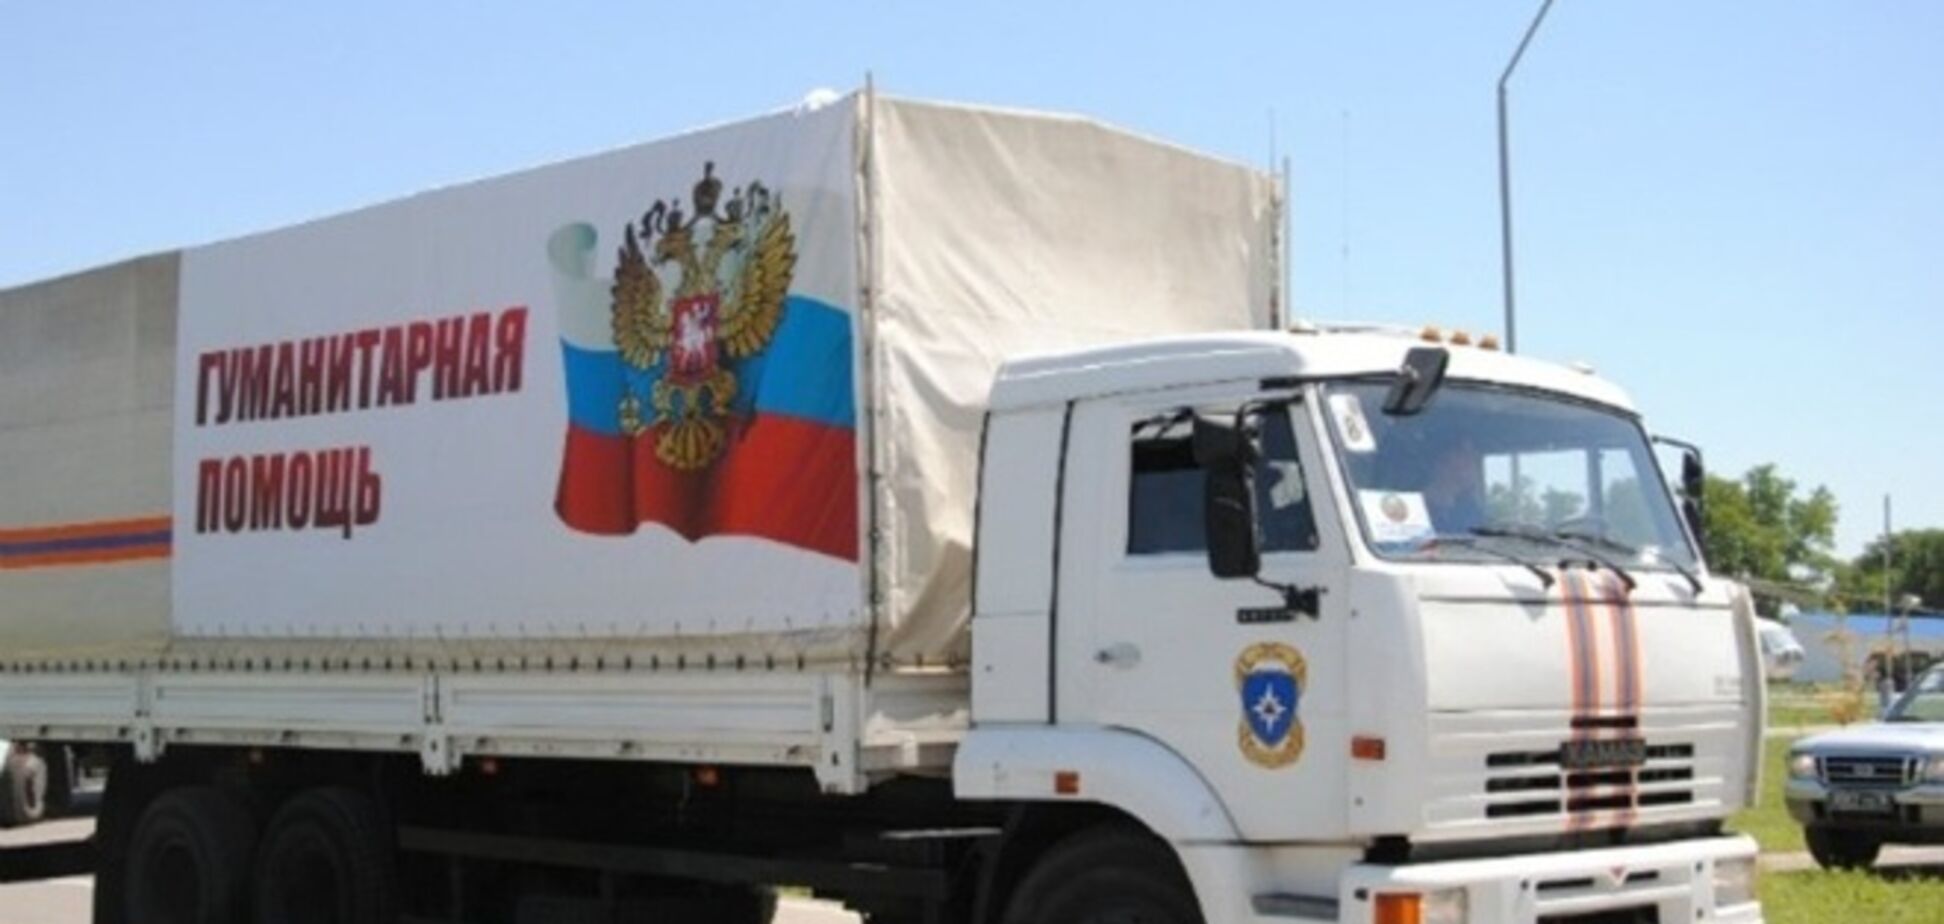 Россия опять незаконно ввела свой гумконвой в Украину